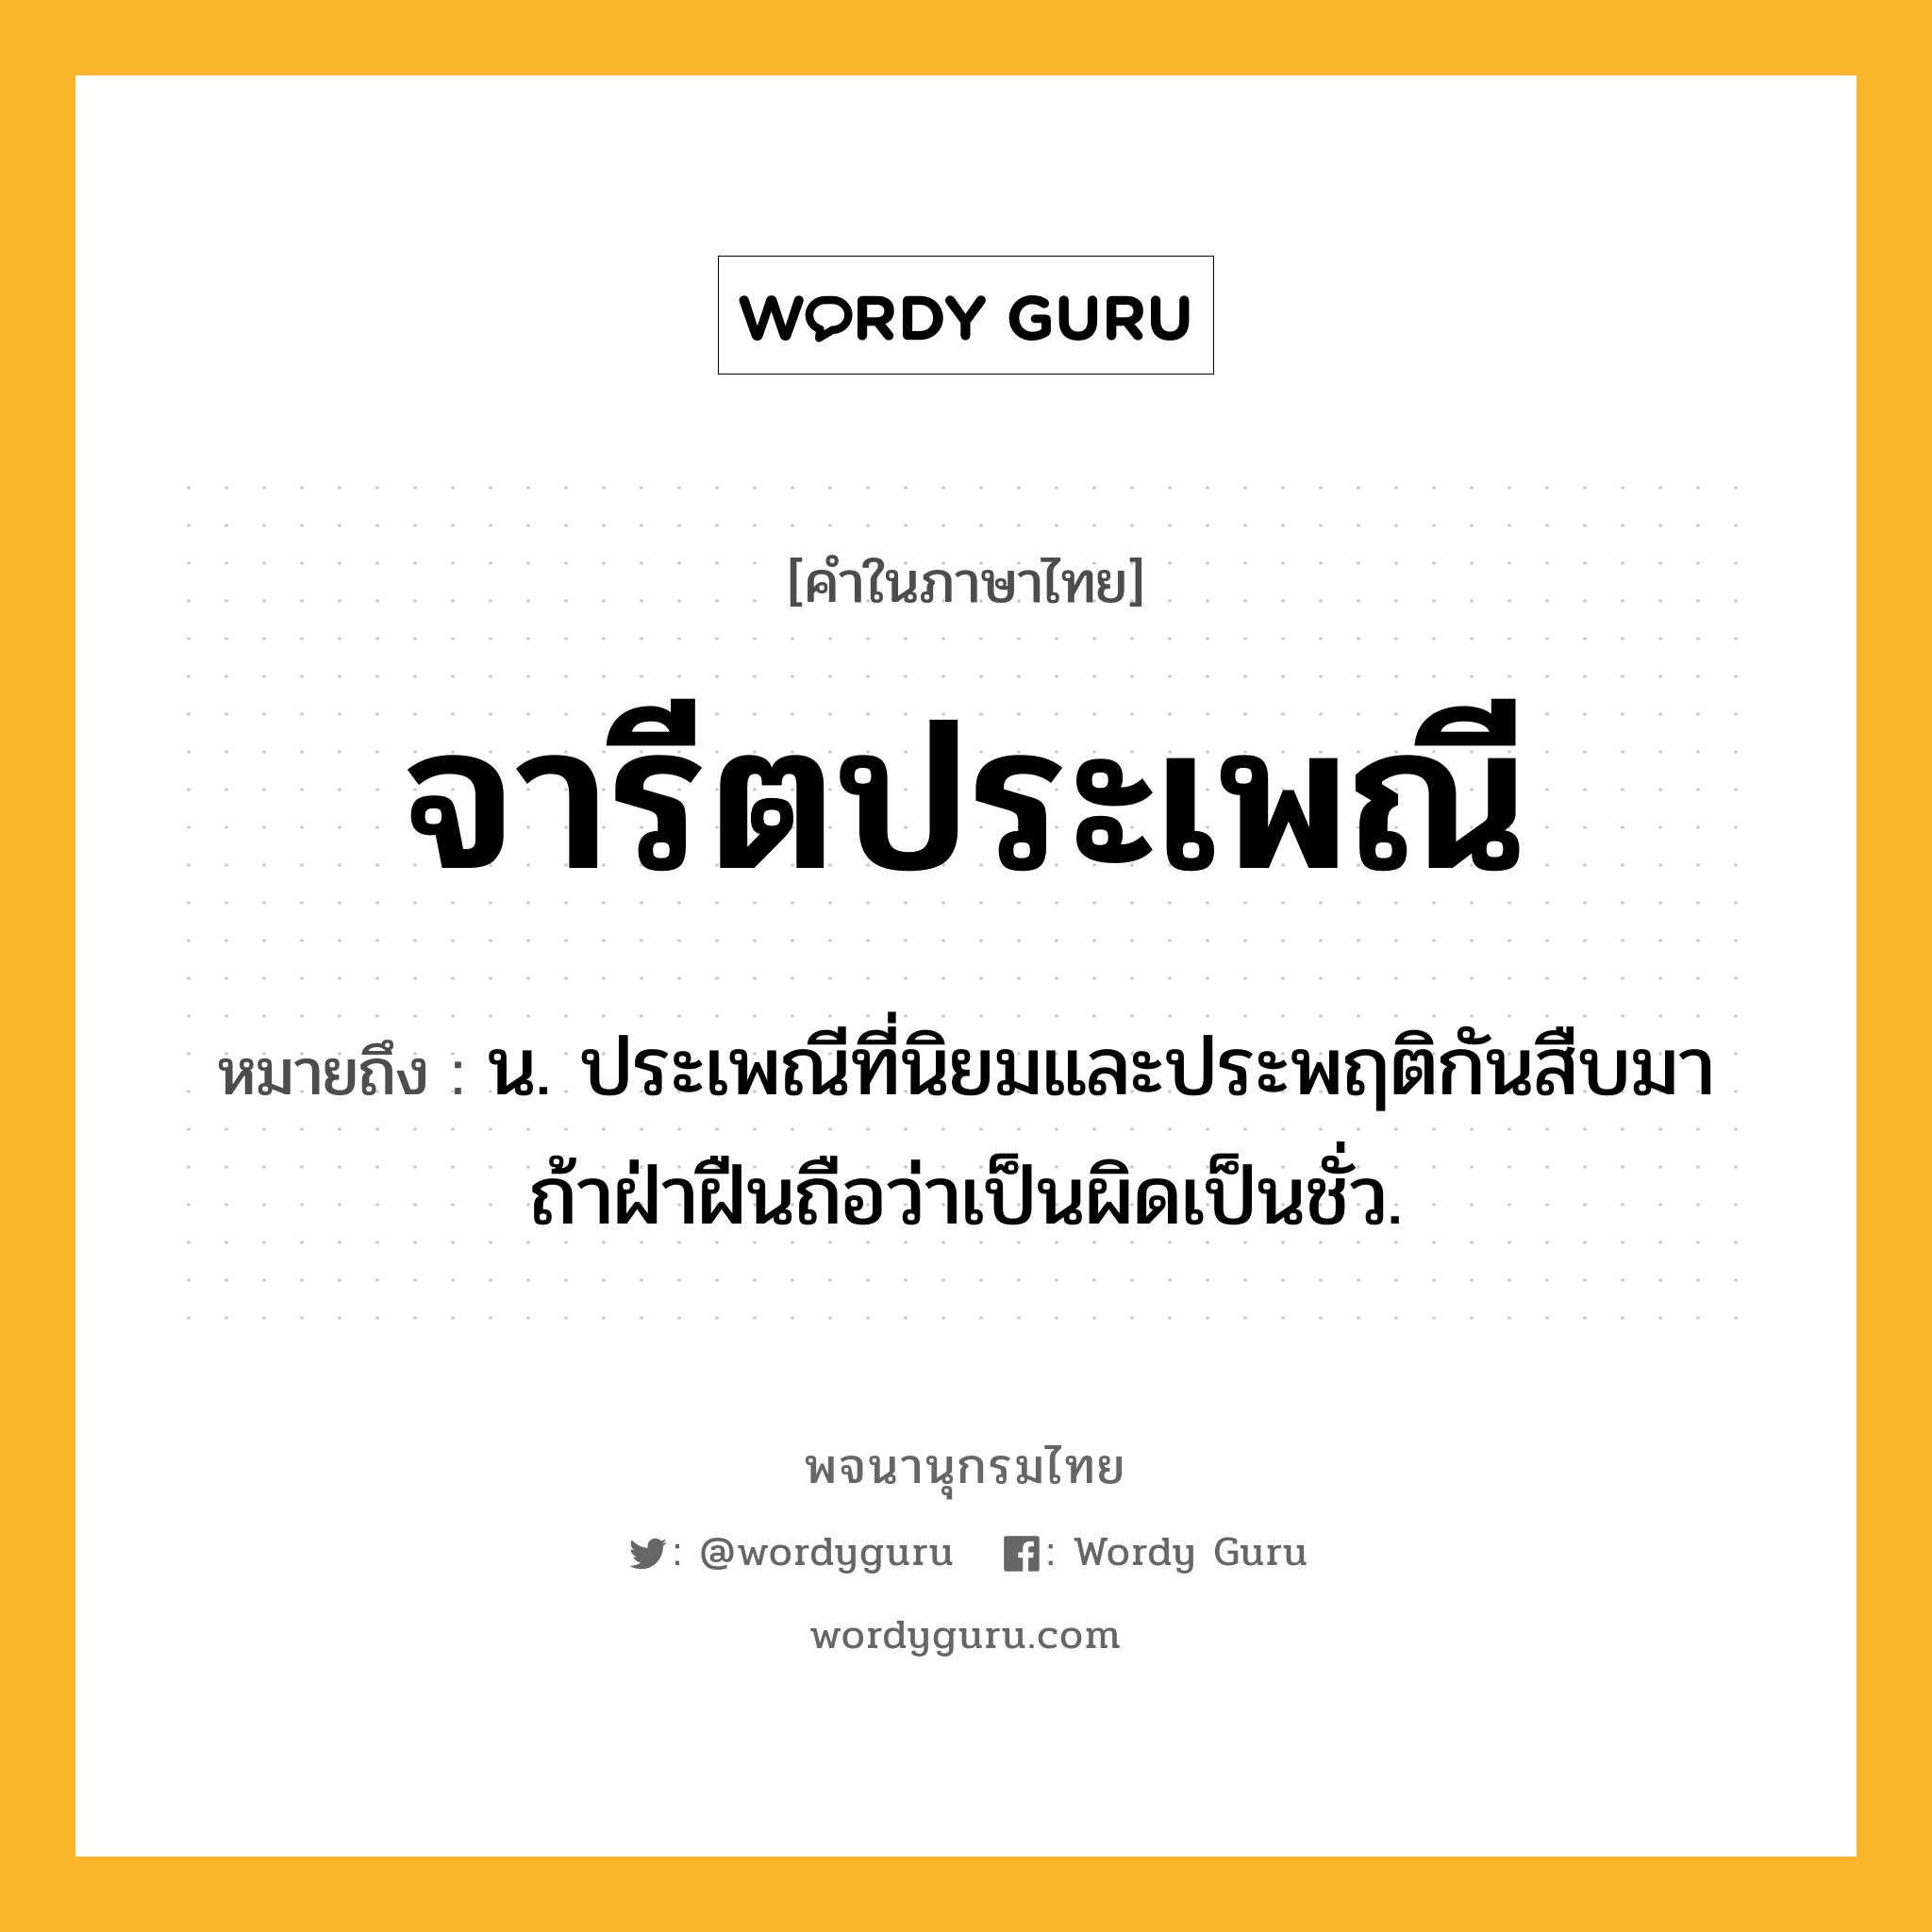 จารีตประเพณี หมายถึงอะไร?, คำในภาษาไทย จารีตประเพณี หมายถึง น. ประเพณีที่นิยมและประพฤติกันสืบมา ถ้าฝ่าฝืนถือว่าเป็นผิดเป็นชั่ว.